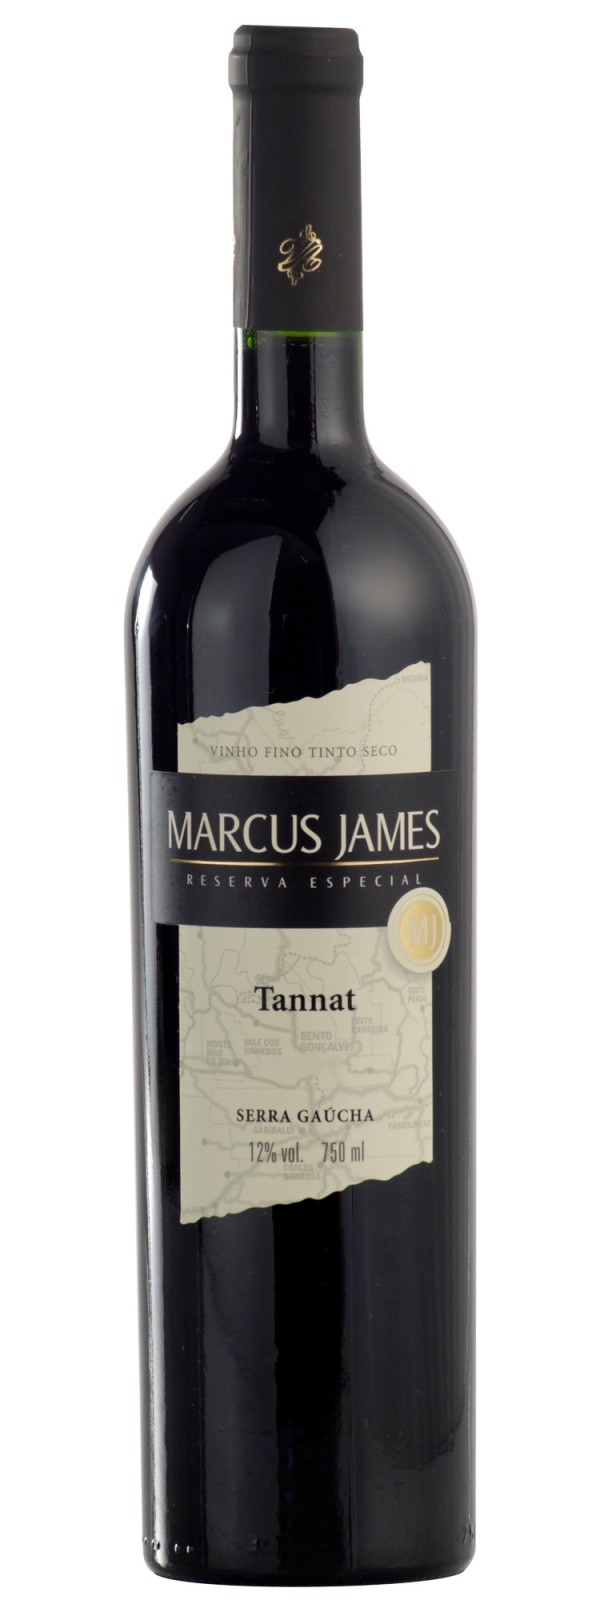 Vinho Marcus James tinto tannat 750 ml